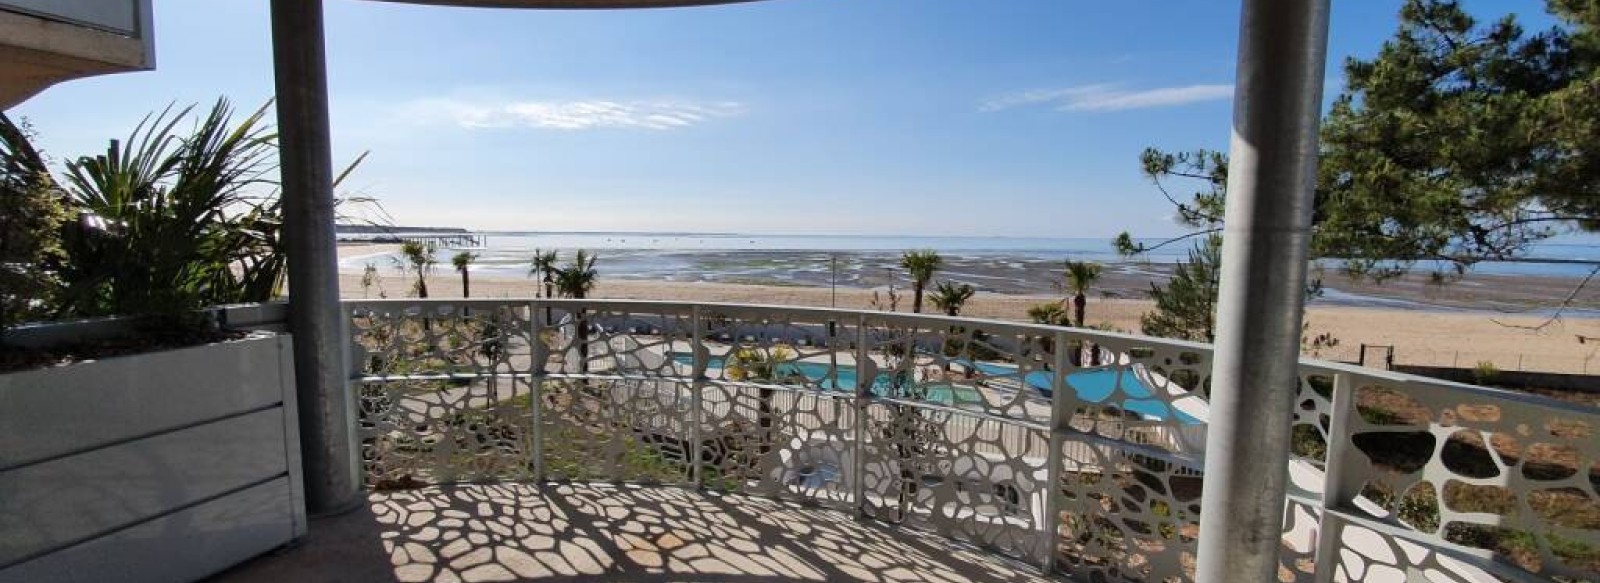 Appartement de standing vue mer pour 4/6 personnes dans residence avec piscine exterieure chauffee, acces direct plage